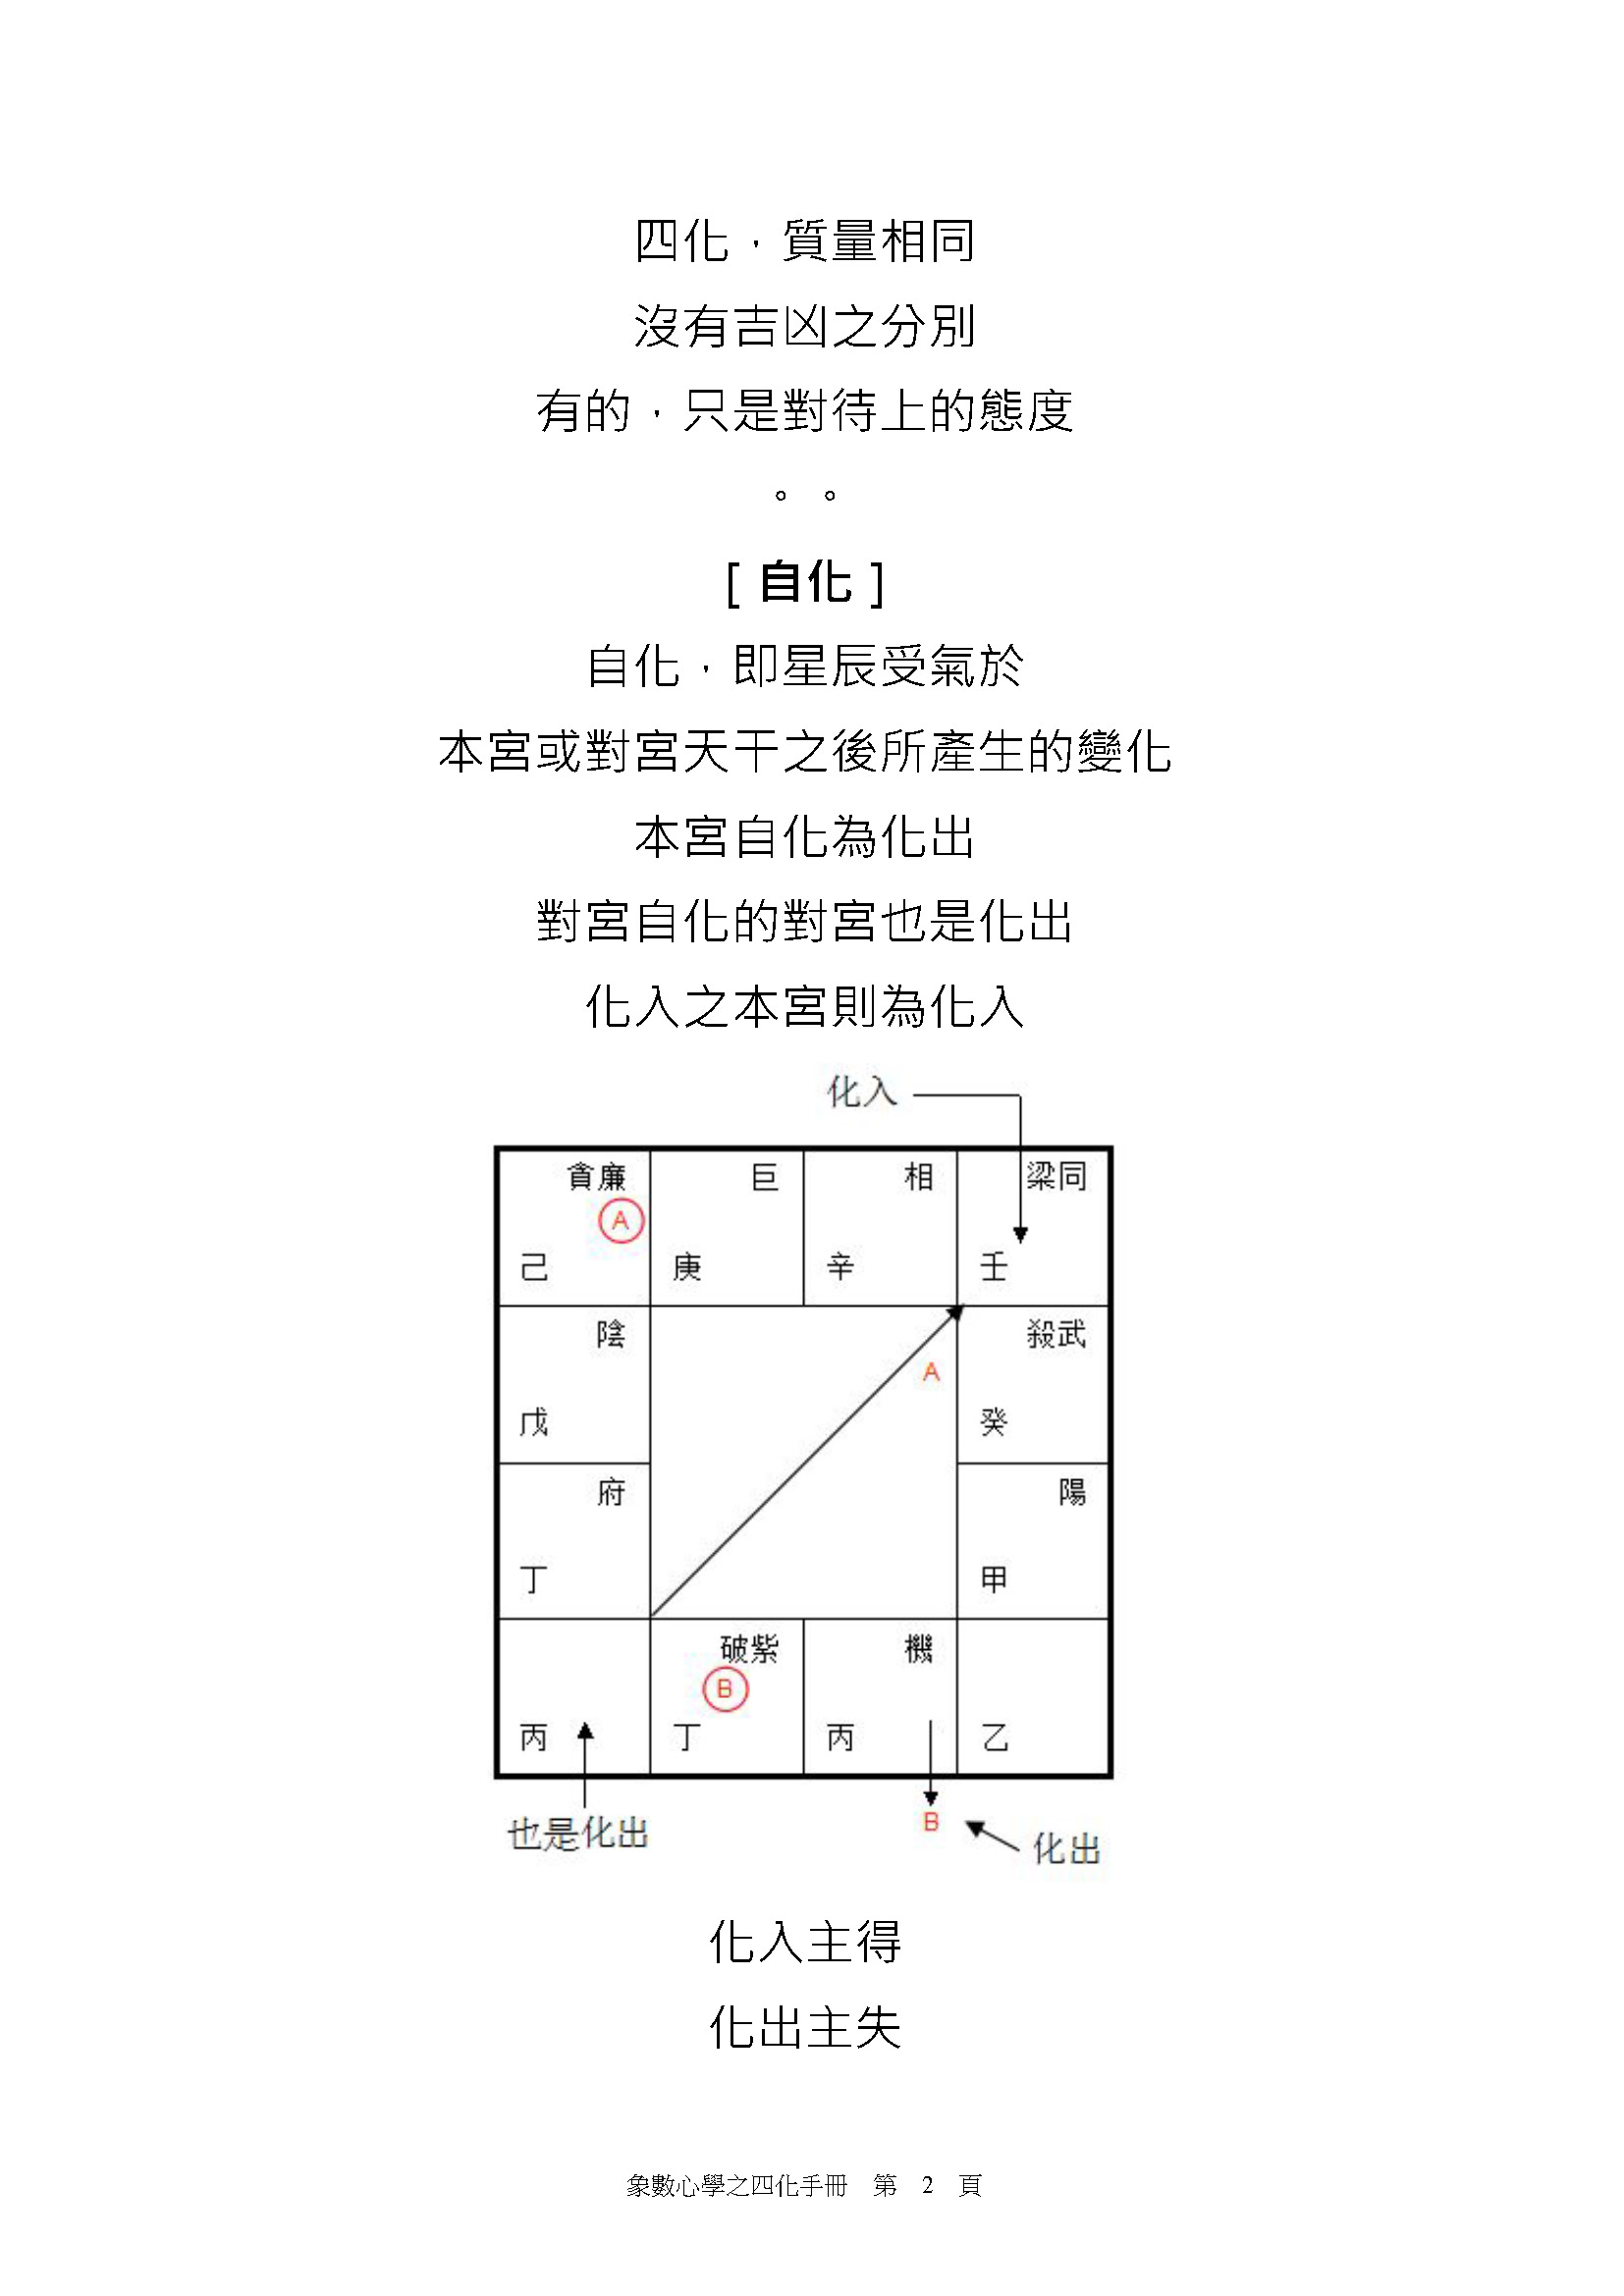 刘金府 象数心学之四化手册